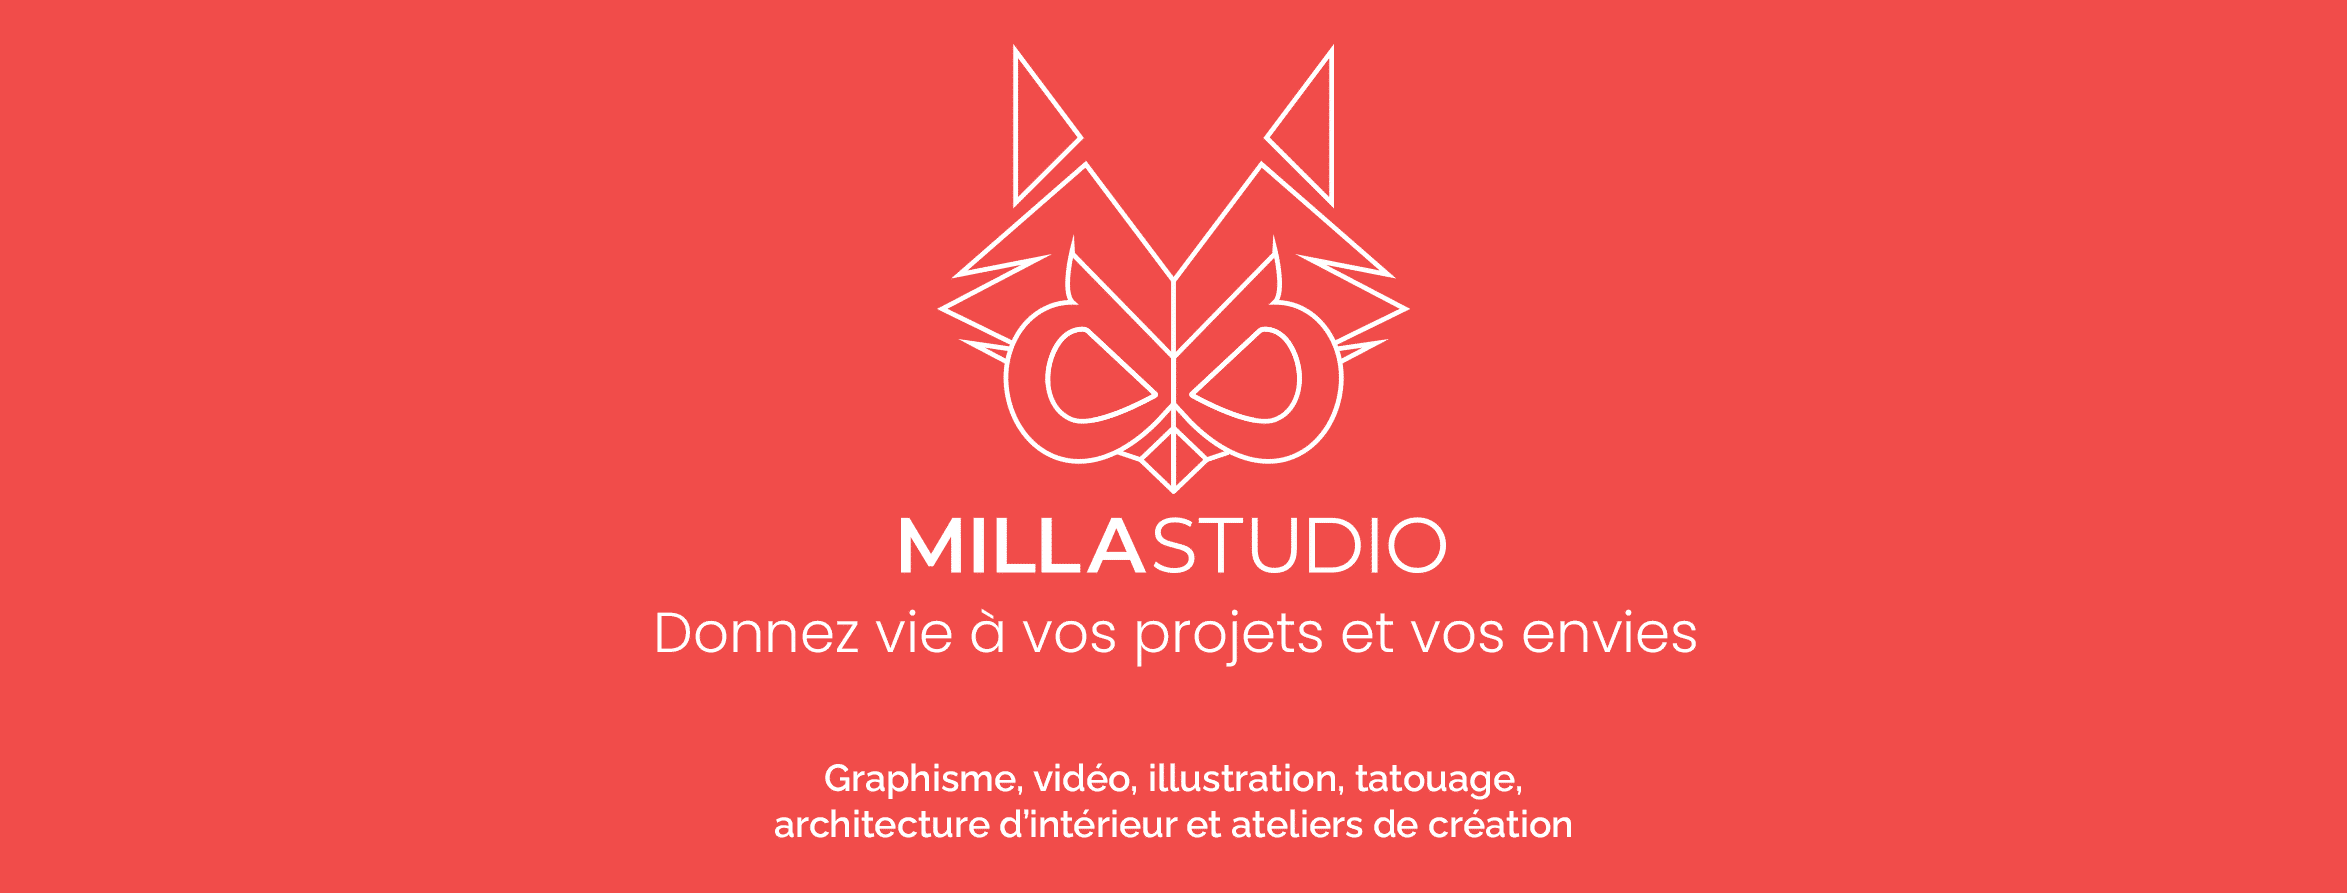 bandeau Milla studio- donnez vie à vos projets et vos envies.